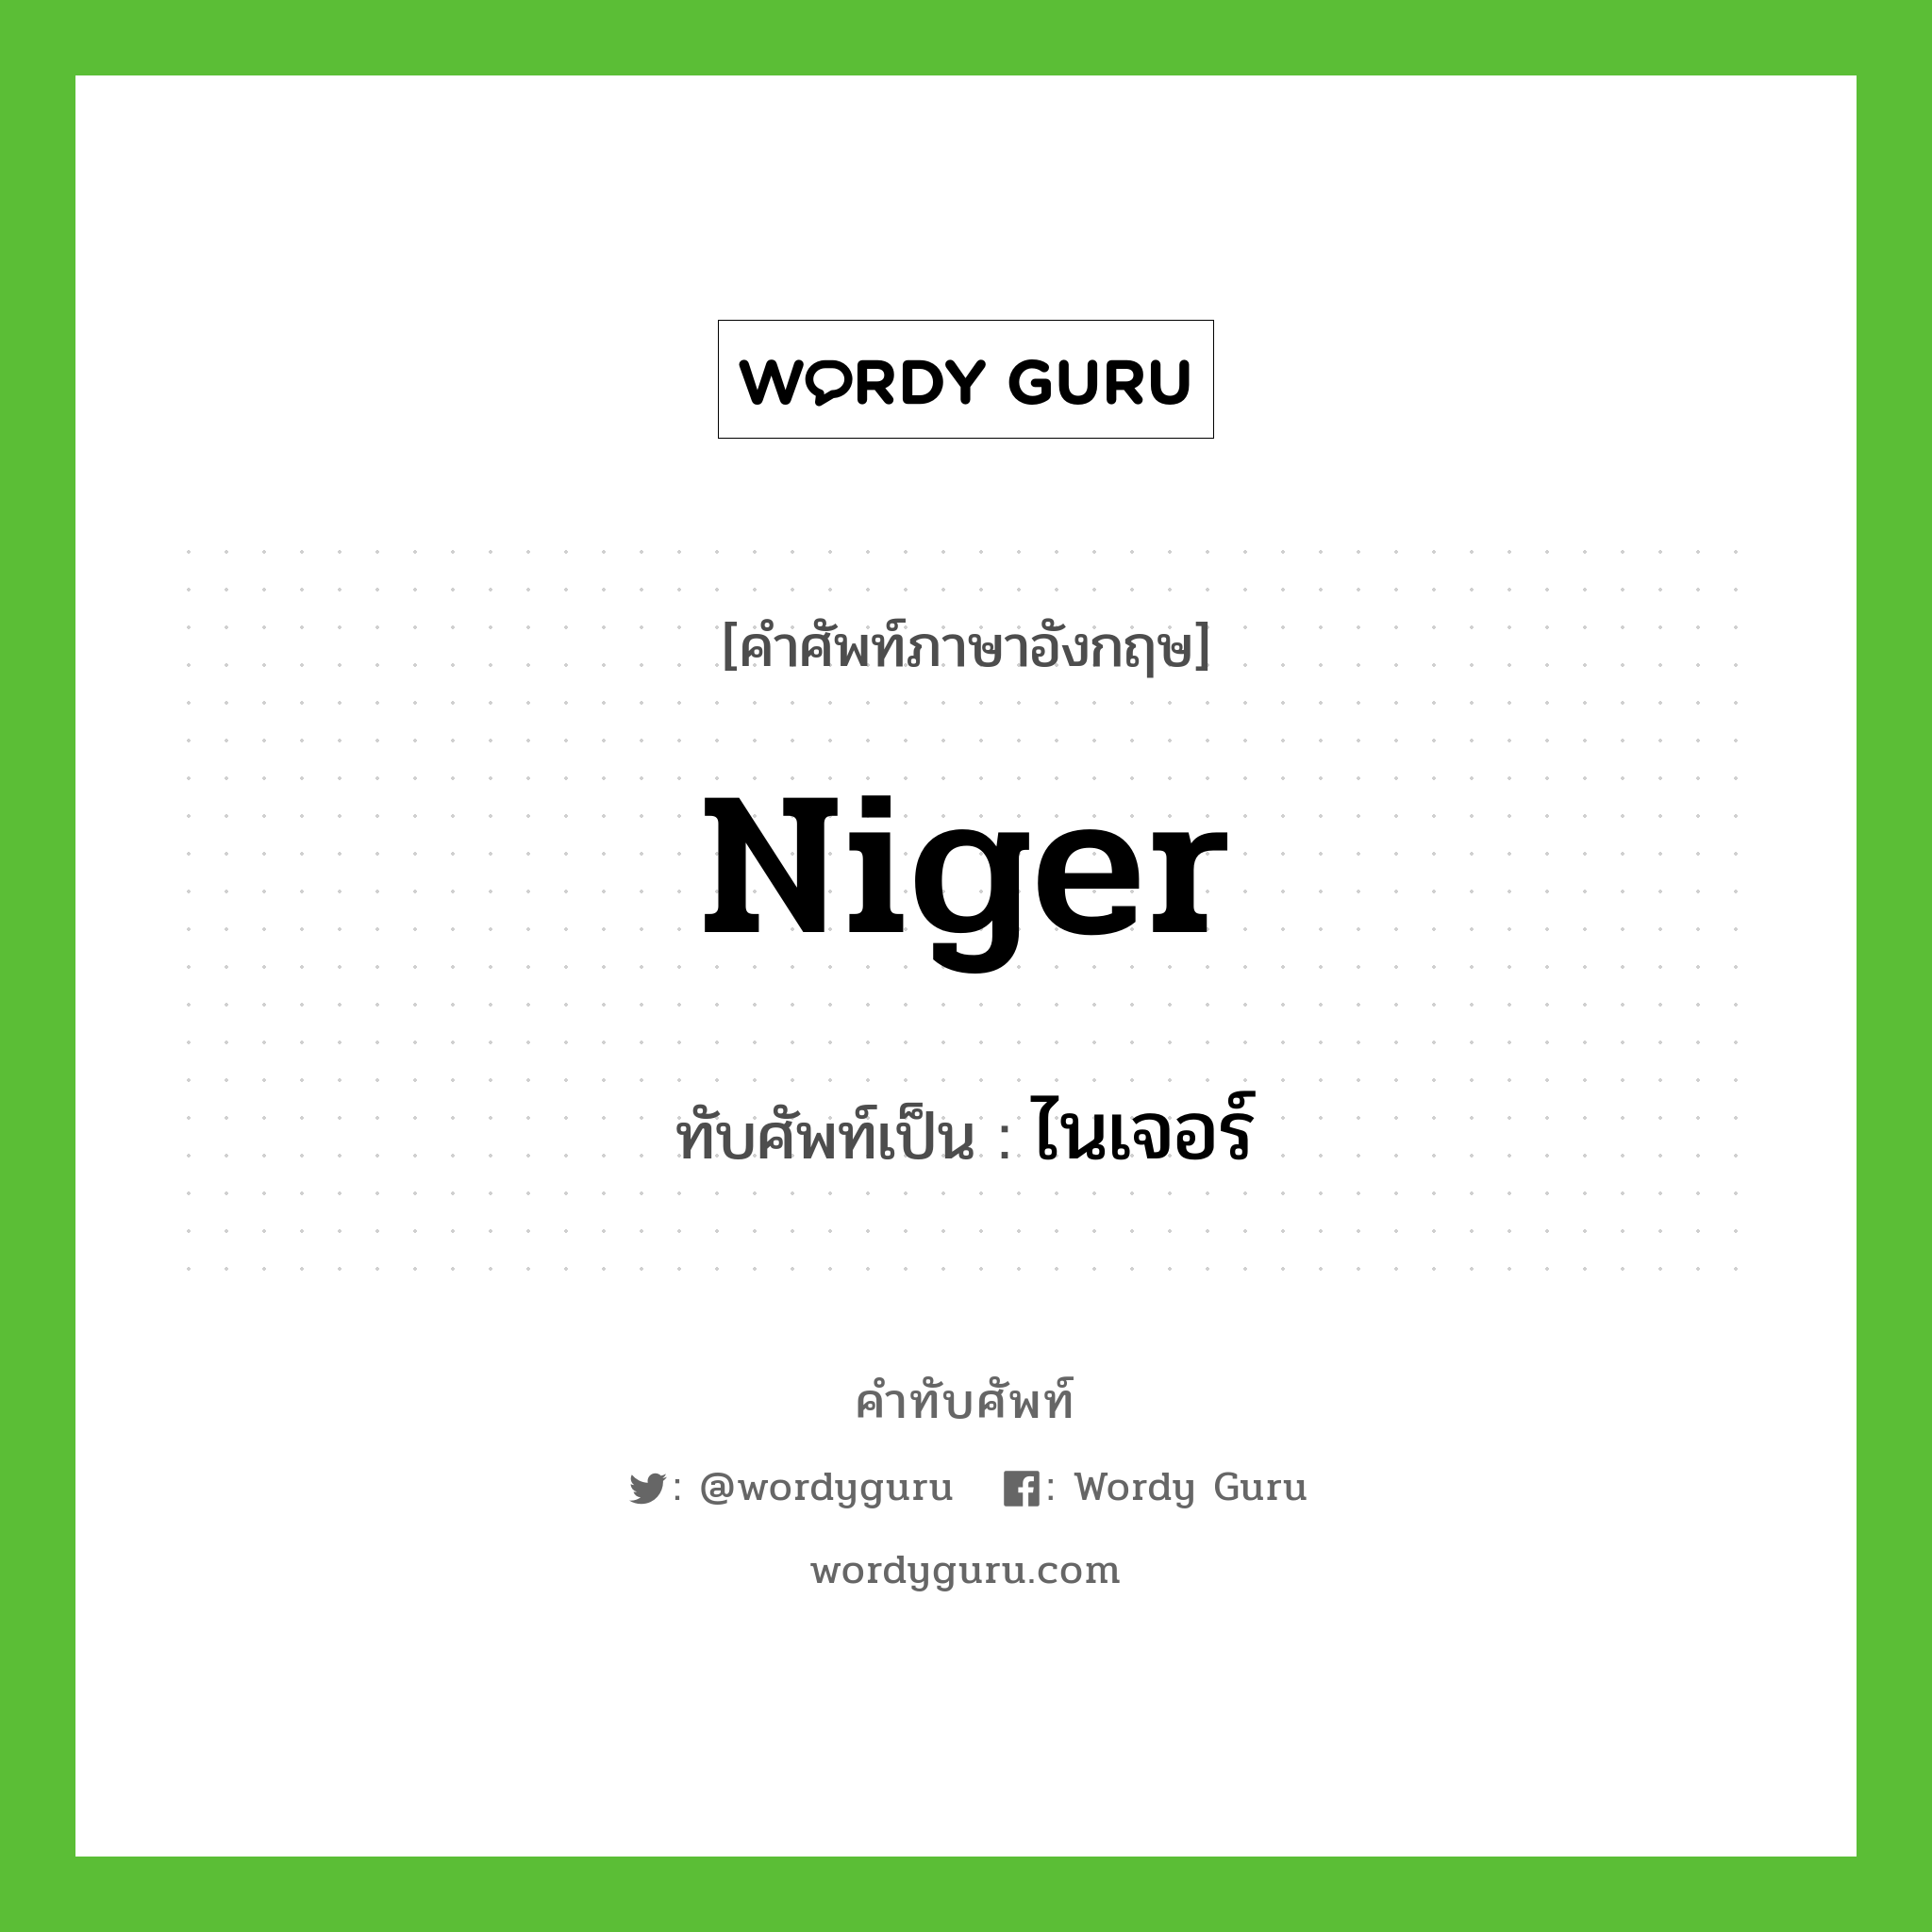 ไนเจอร์ เขียนอย่างไร?, คำศัพท์ภาษาอังกฤษ ไนเจอร์ ทับศัพท์เป็น Niger